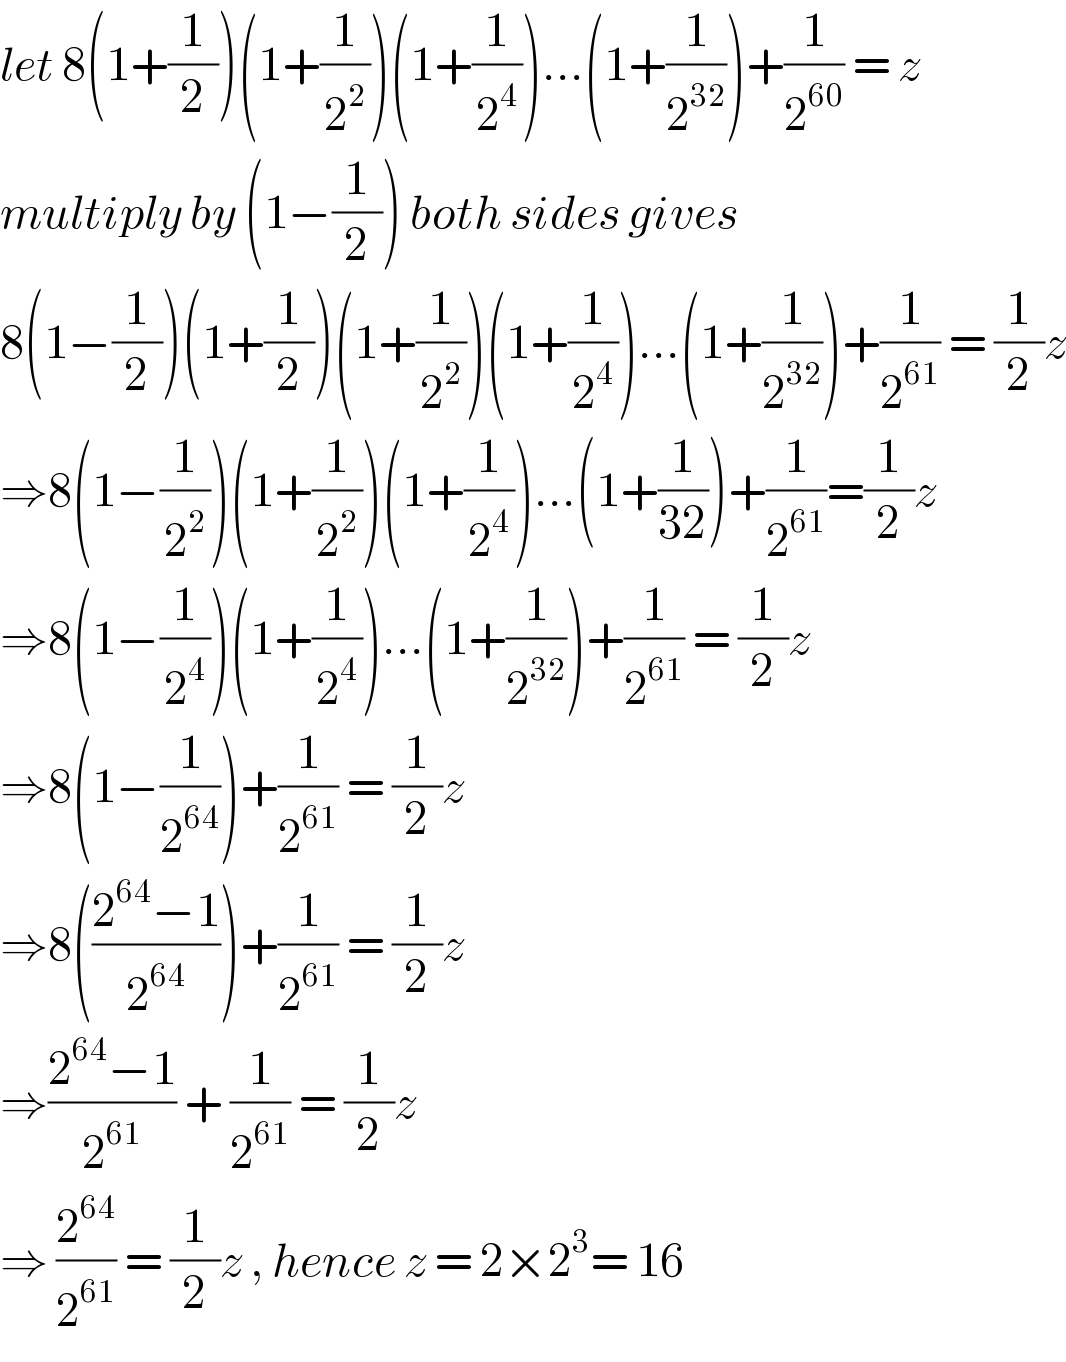 let 8(1+(1/2))(1+(1/2^2 ))(1+(1/2^4 ))...(1+(1/2^(32) ))+(1/2^(60) ) = z  multiply by (1−(1/2)) both sides gives  8(1−(1/2))(1+(1/2))(1+(1/2^2 ))(1+(1/2^4 ))...(1+(1/2^(32) ))+(1/2^(61) ) = (1/2)z  ⇒8(1−(1/2^2 ))(1+(1/2^2 ))(1+(1/2^4 ))...(1+(1/(32)))+(1/2^(61) )=(1/2)z  ⇒8(1−(1/2^4 ))(1+(1/2^4 ))...(1+(1/2^(32) ))+(1/2^(61) ) = (1/2)z  ⇒8(1−(1/2^(64) ))+(1/2^(61) ) = (1/2)z  ⇒8(((2^(64) −1)/2^(64) ))+(1/2^(61) ) = (1/2)z   ⇒((2^(64) −1)/2^(61) ) + (1/2^(61) ) = (1/2)z   ⇒ (2^(64) /2^(61) ) = (1/2)z , hence z = 2×2^3 = 16  